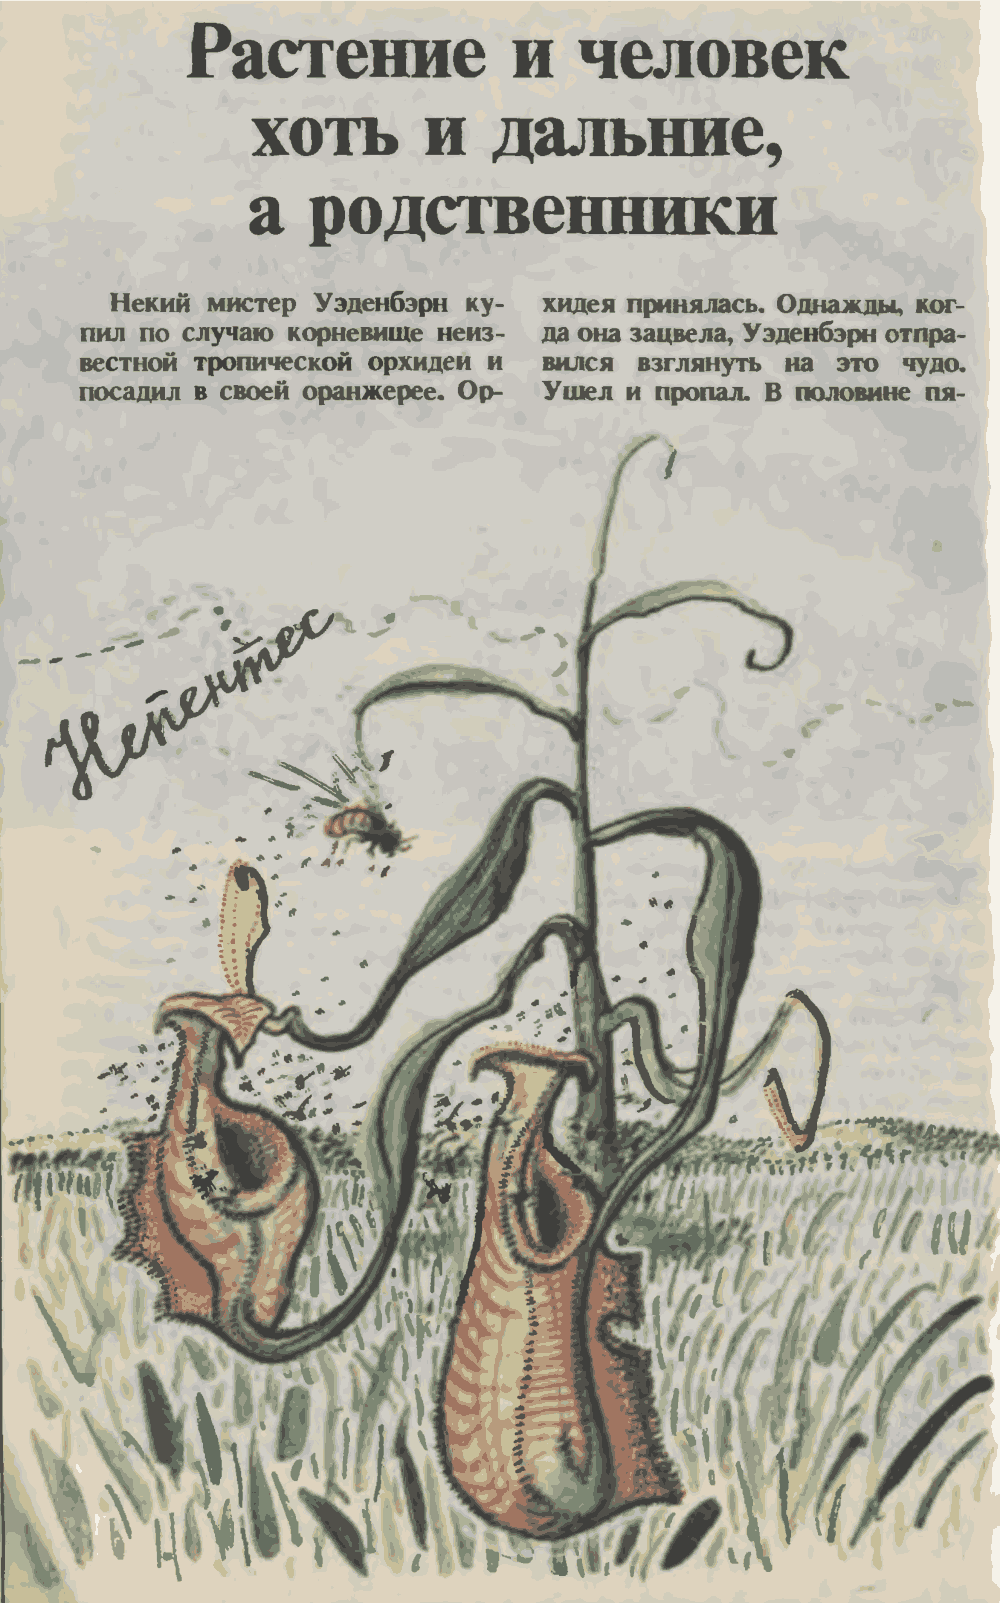 Растения и человек хоть и дальние, а родственники. О. Семенов. Юный техник, 1993, №3, с.14-19. Фотокопия №1